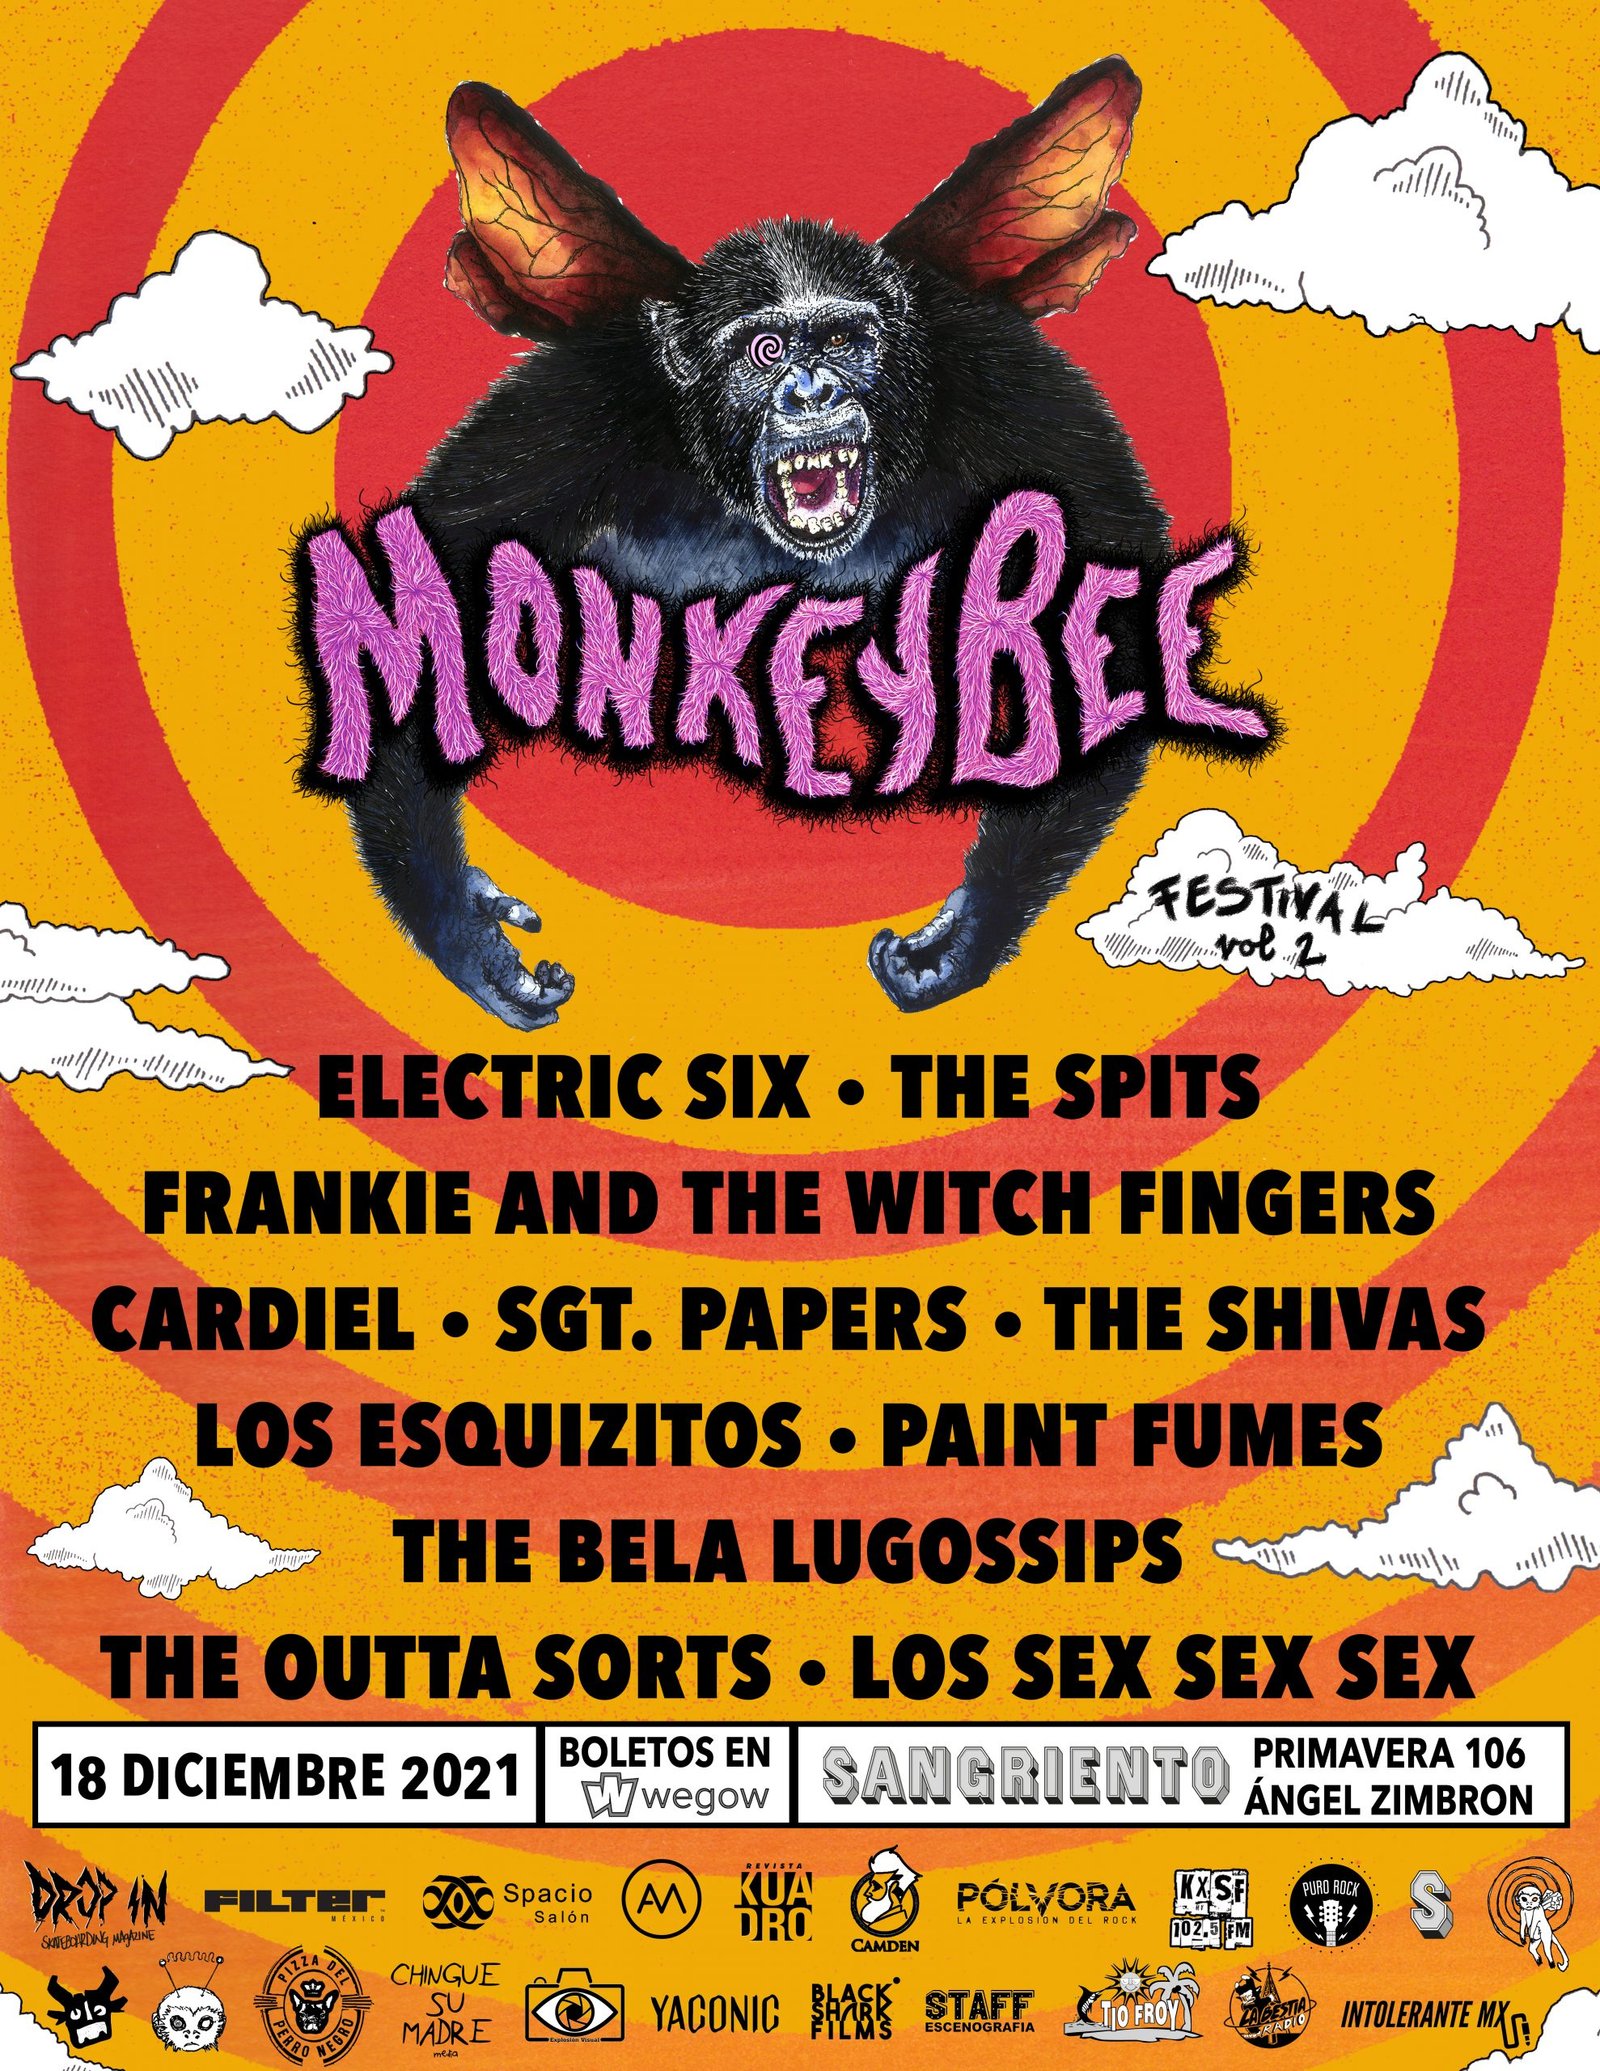 ¡El MonkeyBee Fest ya alista su edición 2021!